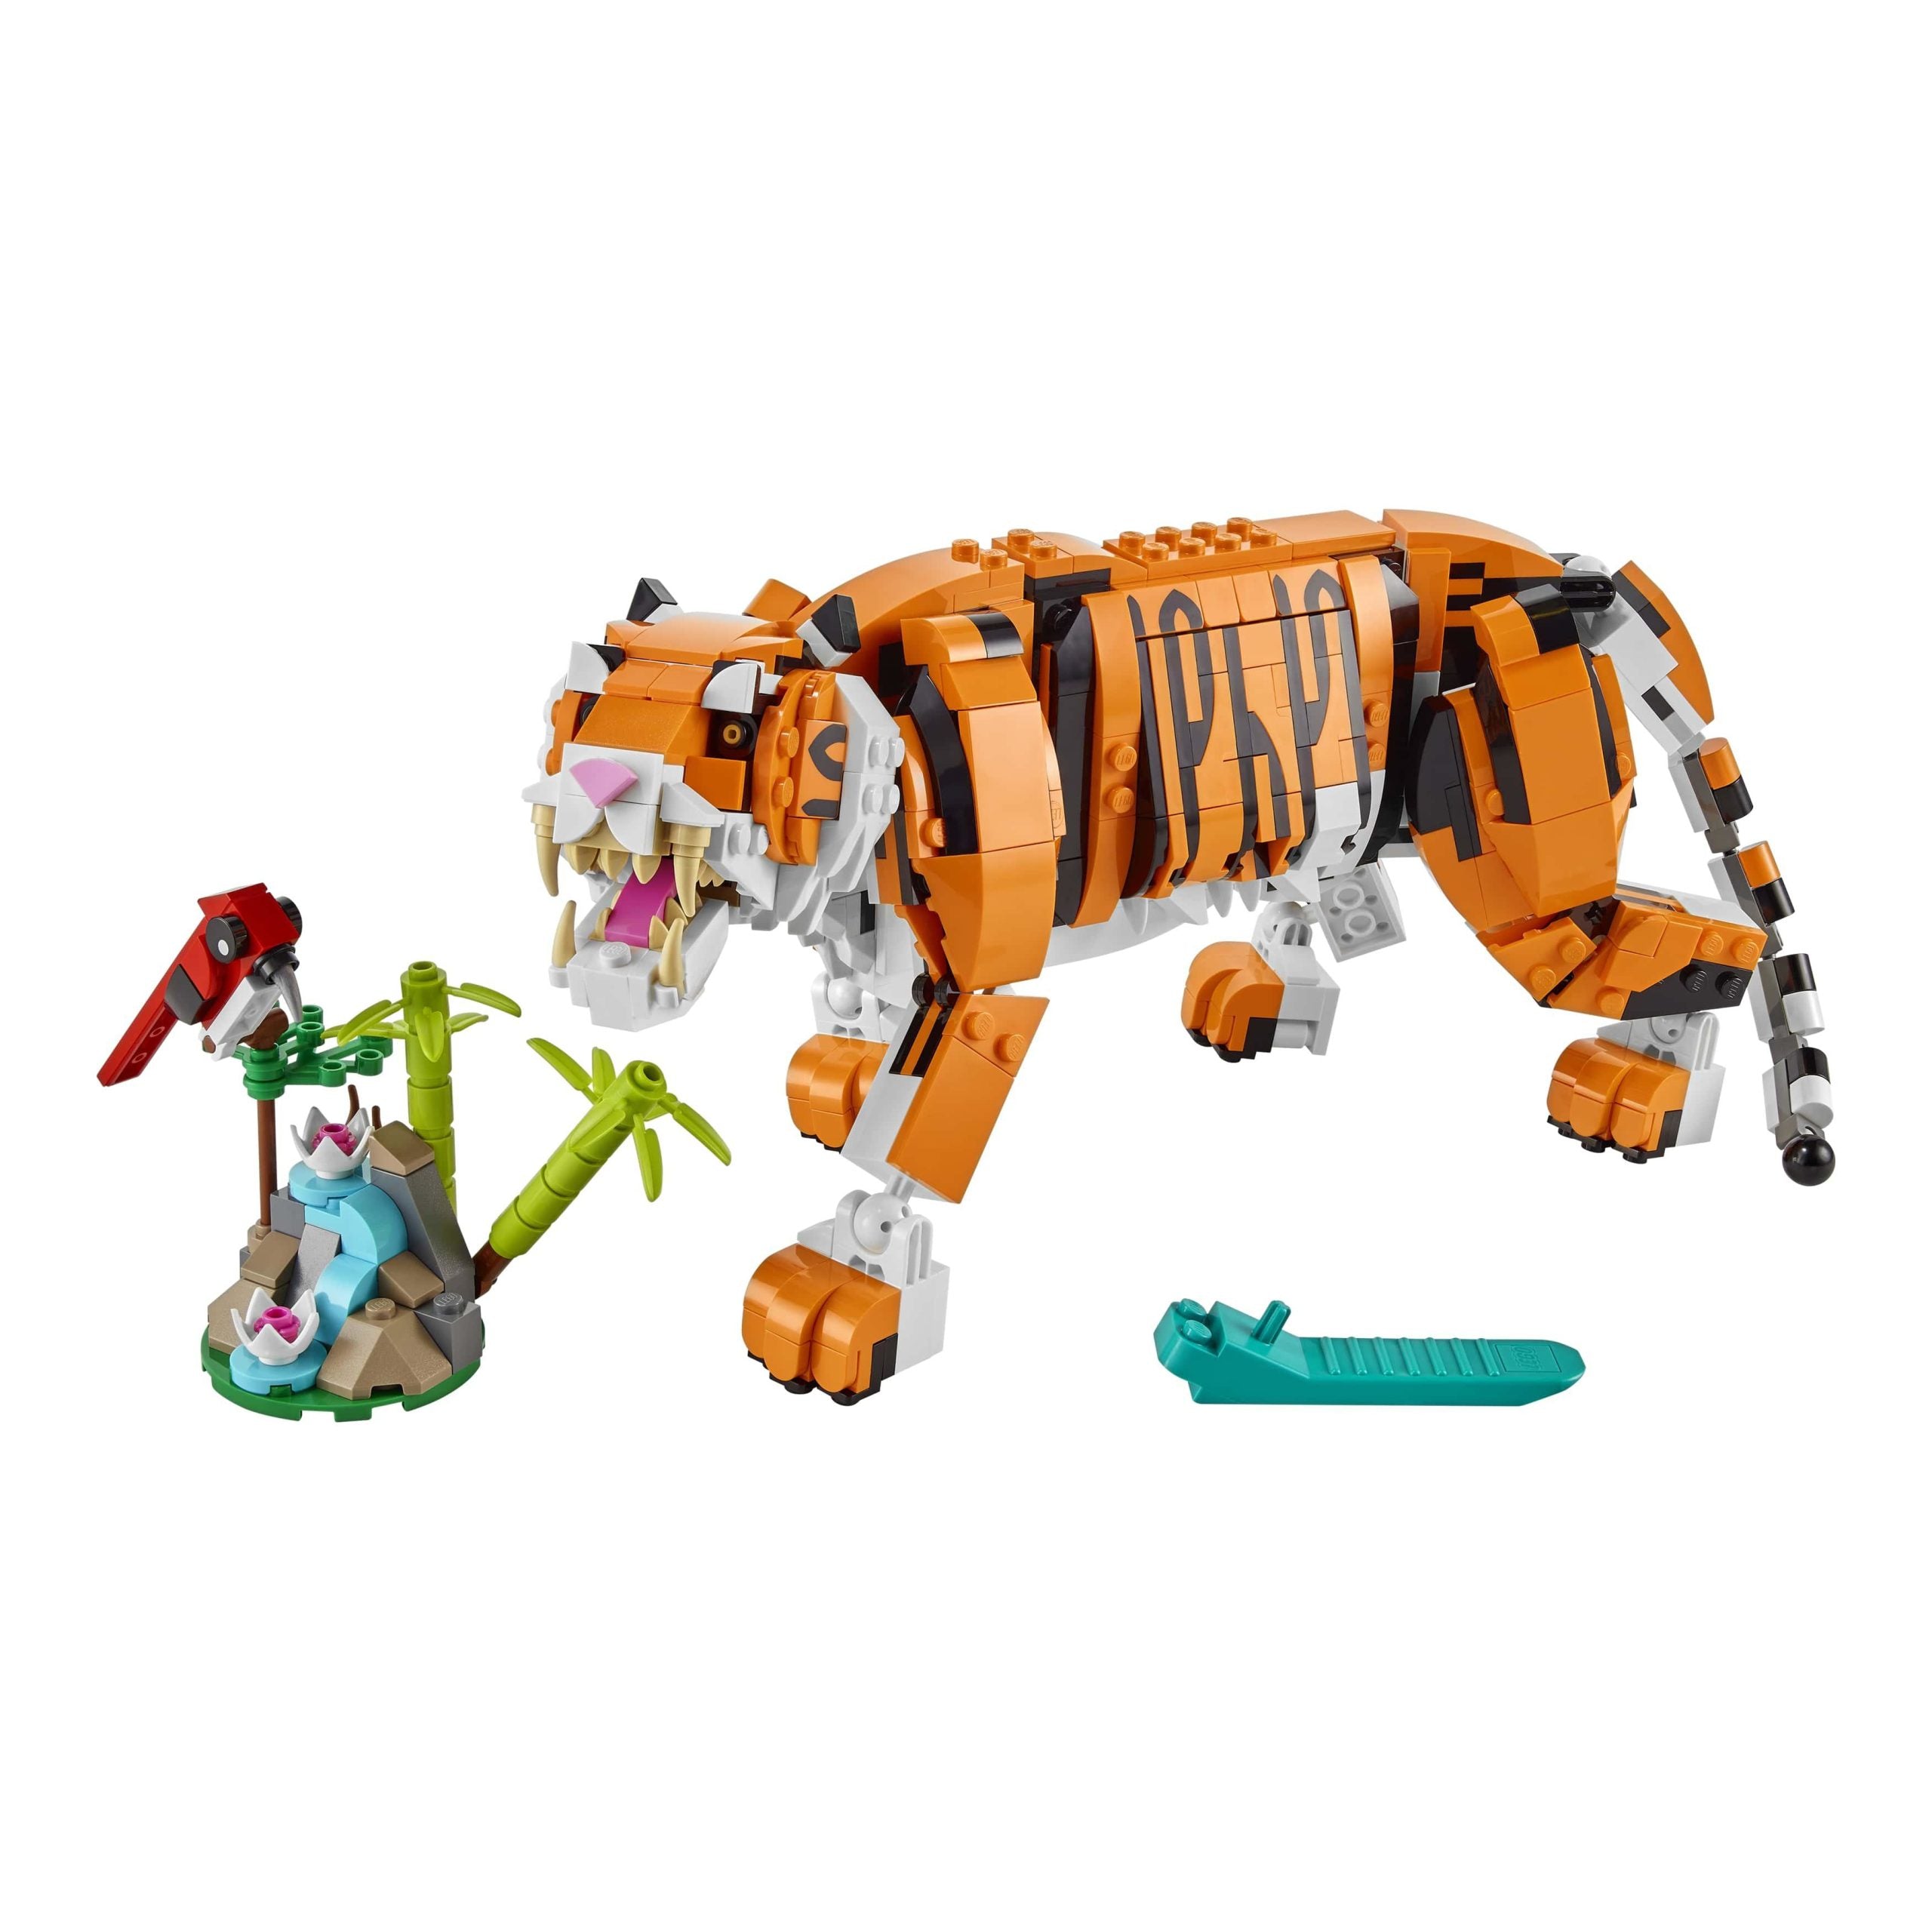 31129 LEGO® Creator 3+1 - Tigre maestosa